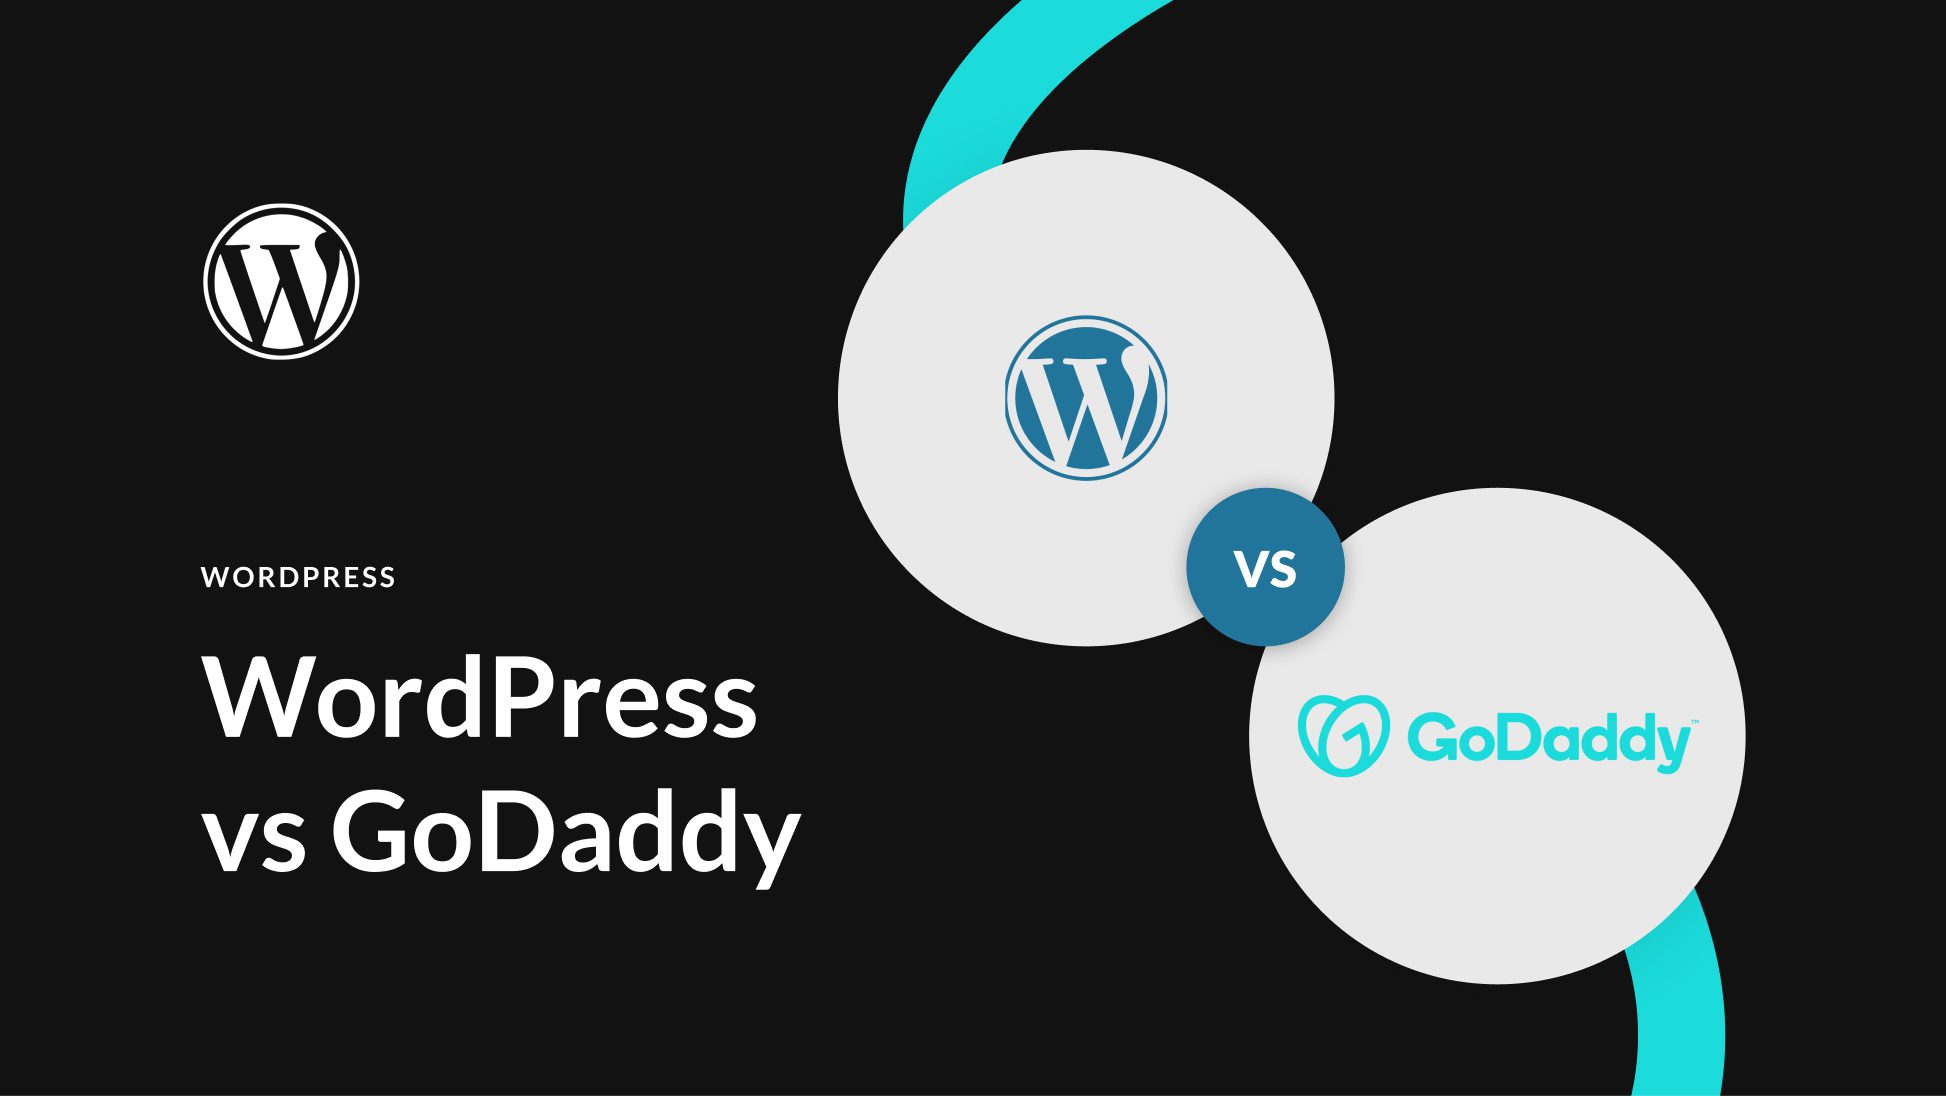 WordPress vs GoDaddy Website Builder (2023) — Let’s Compare!